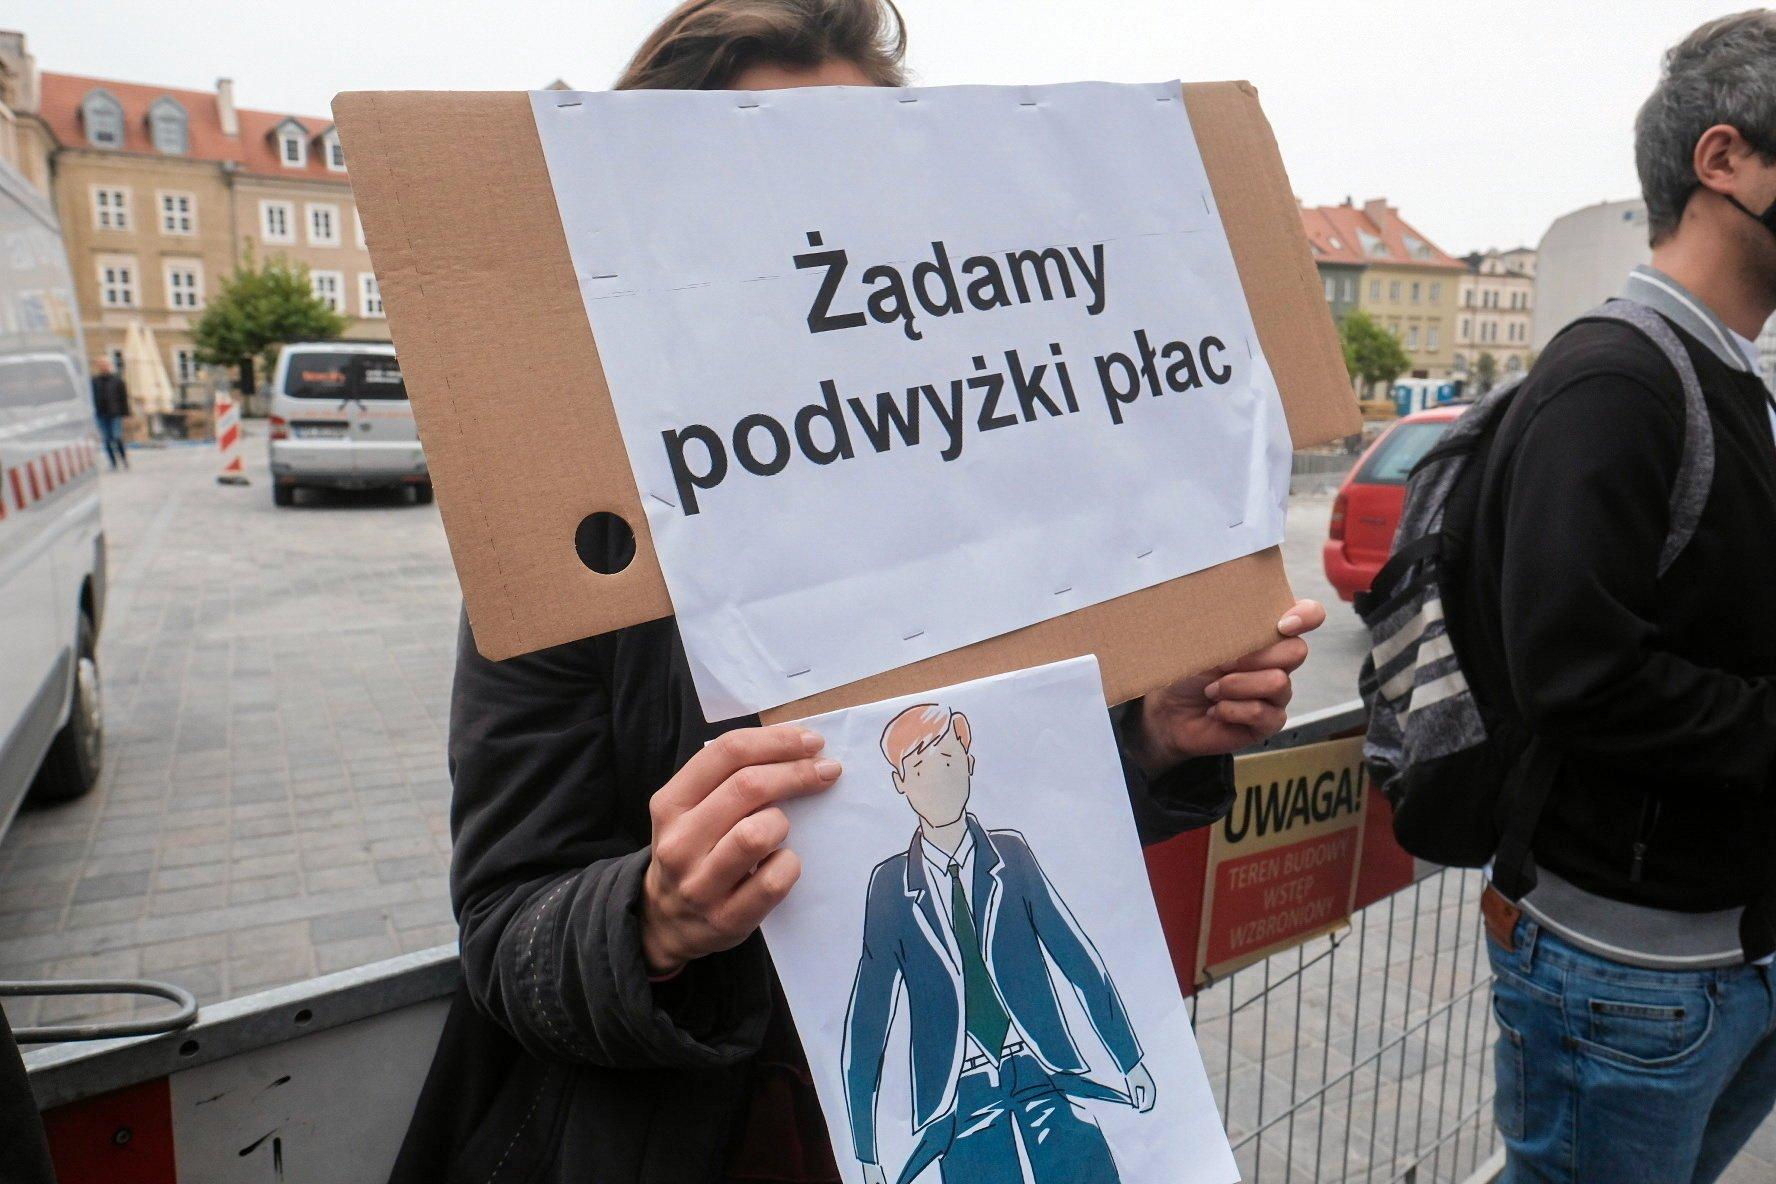 protest z transparentem "Żądamy podwyżki płac"